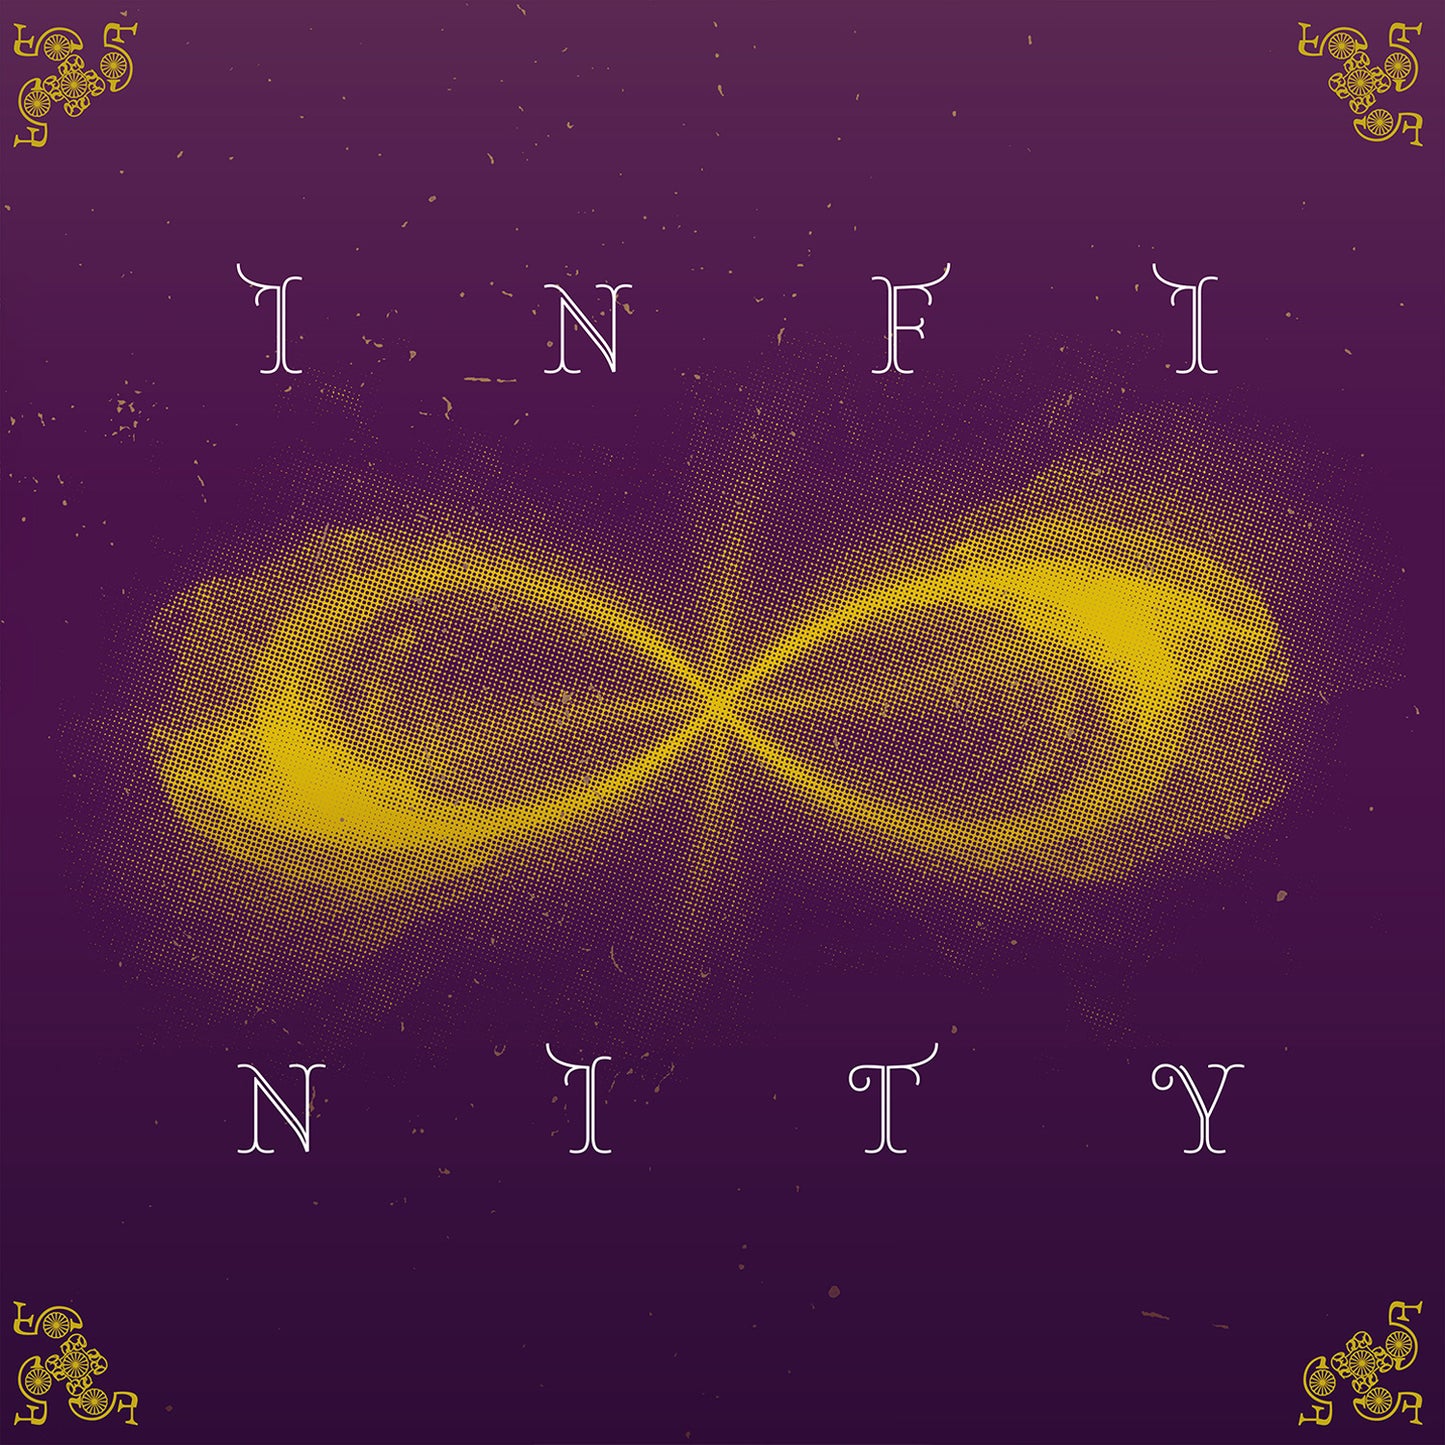 LP "Infinity" Vinyl